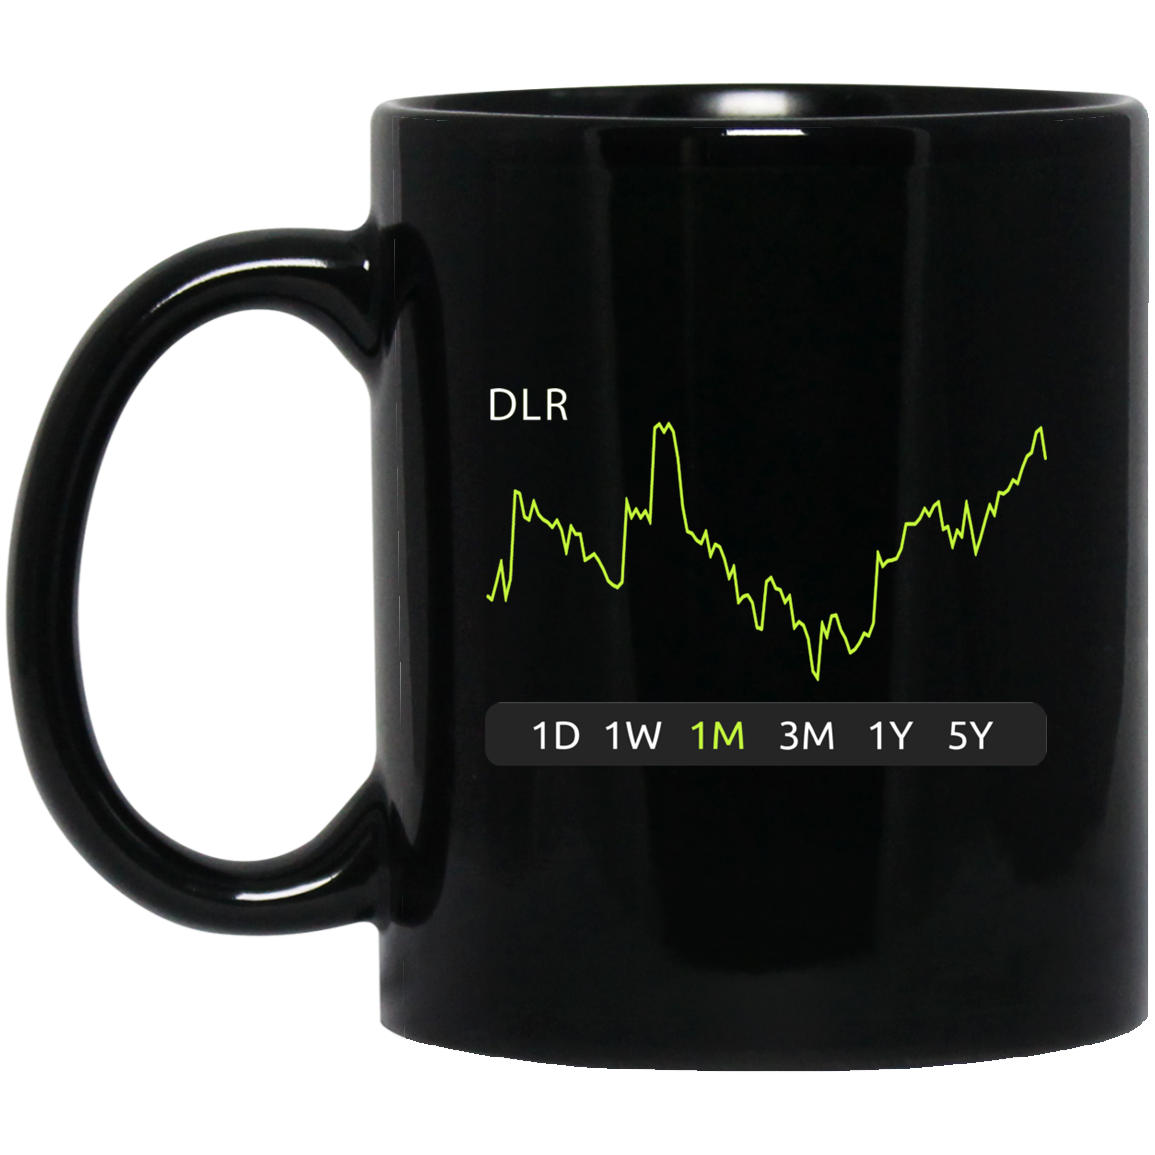 DLR Stock 1m Mug